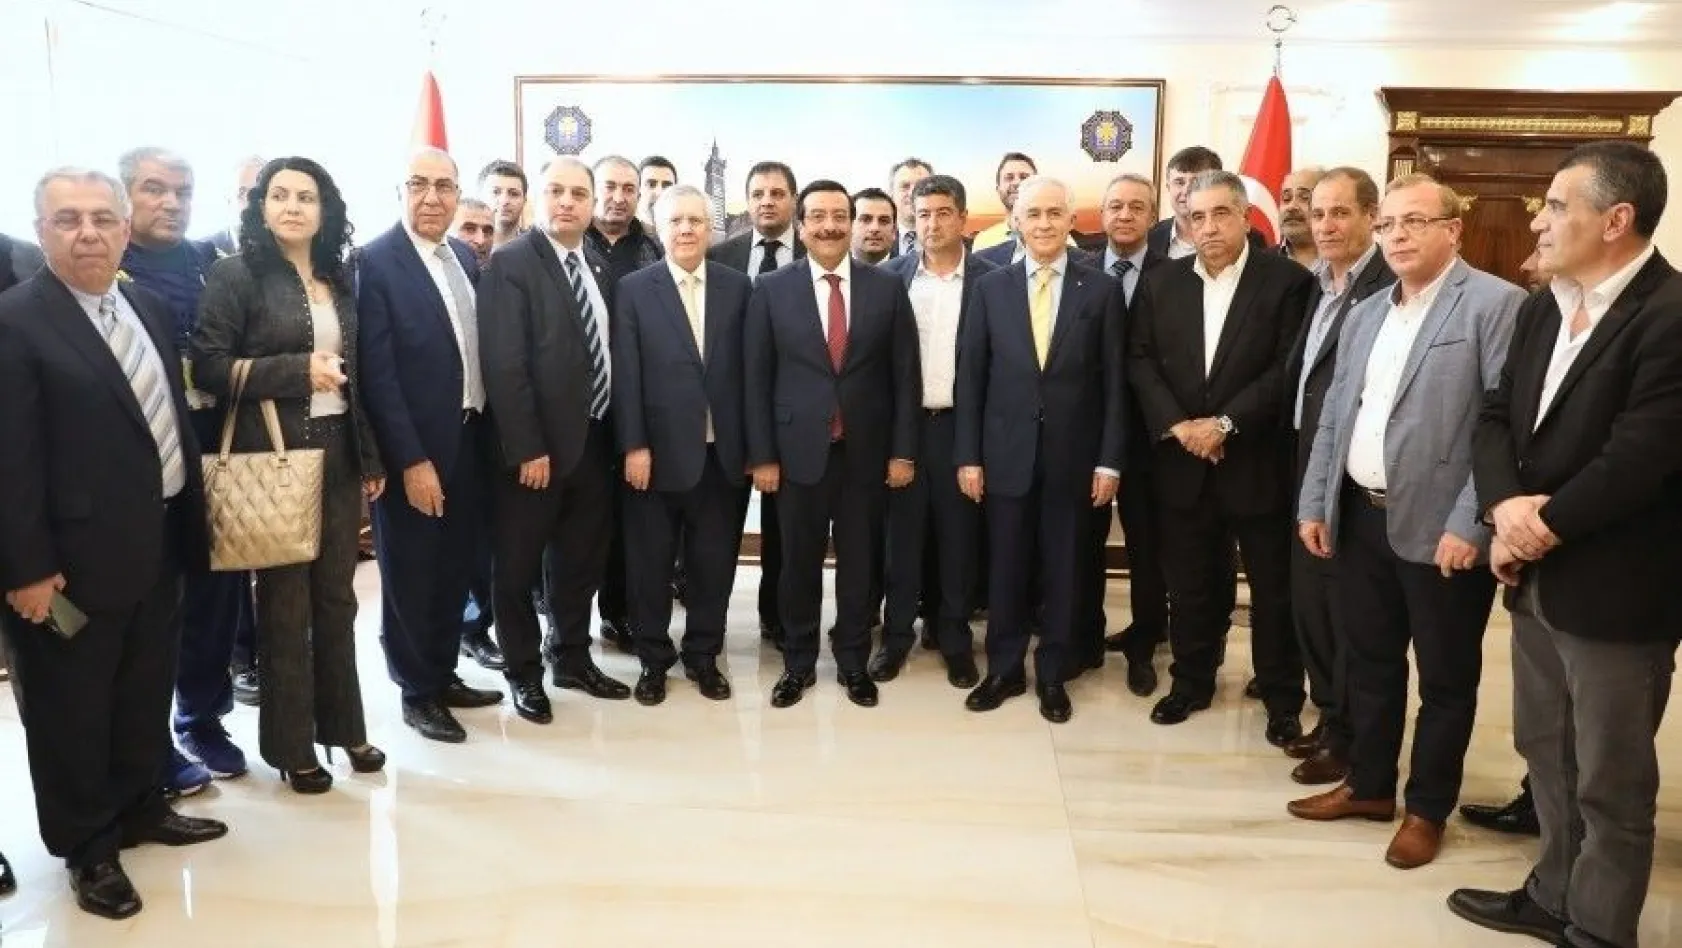 Fenerbahçe Spor Kulübünden Başkan Atilla'ya ziyaret
